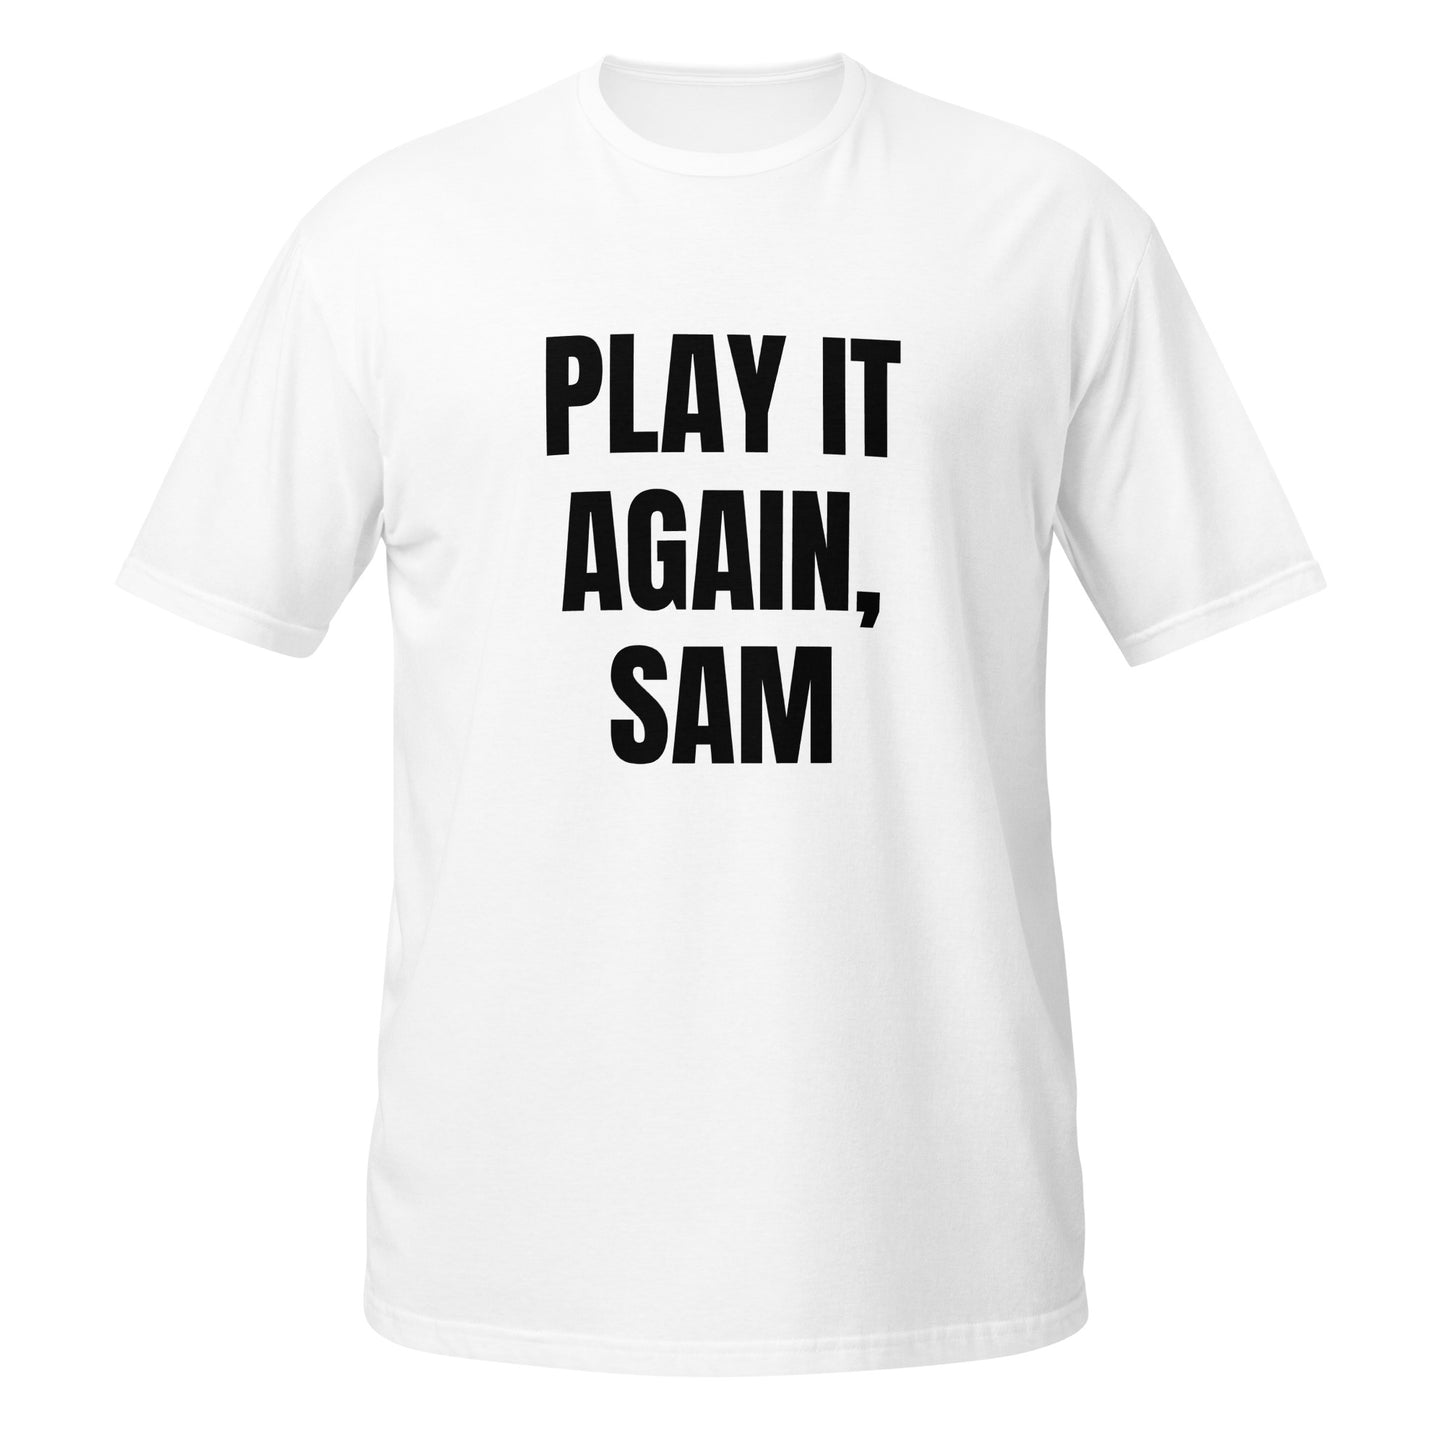 Short-Sleeve Unisex T-Shirt "PLAY IT AGAIN, SAM" white